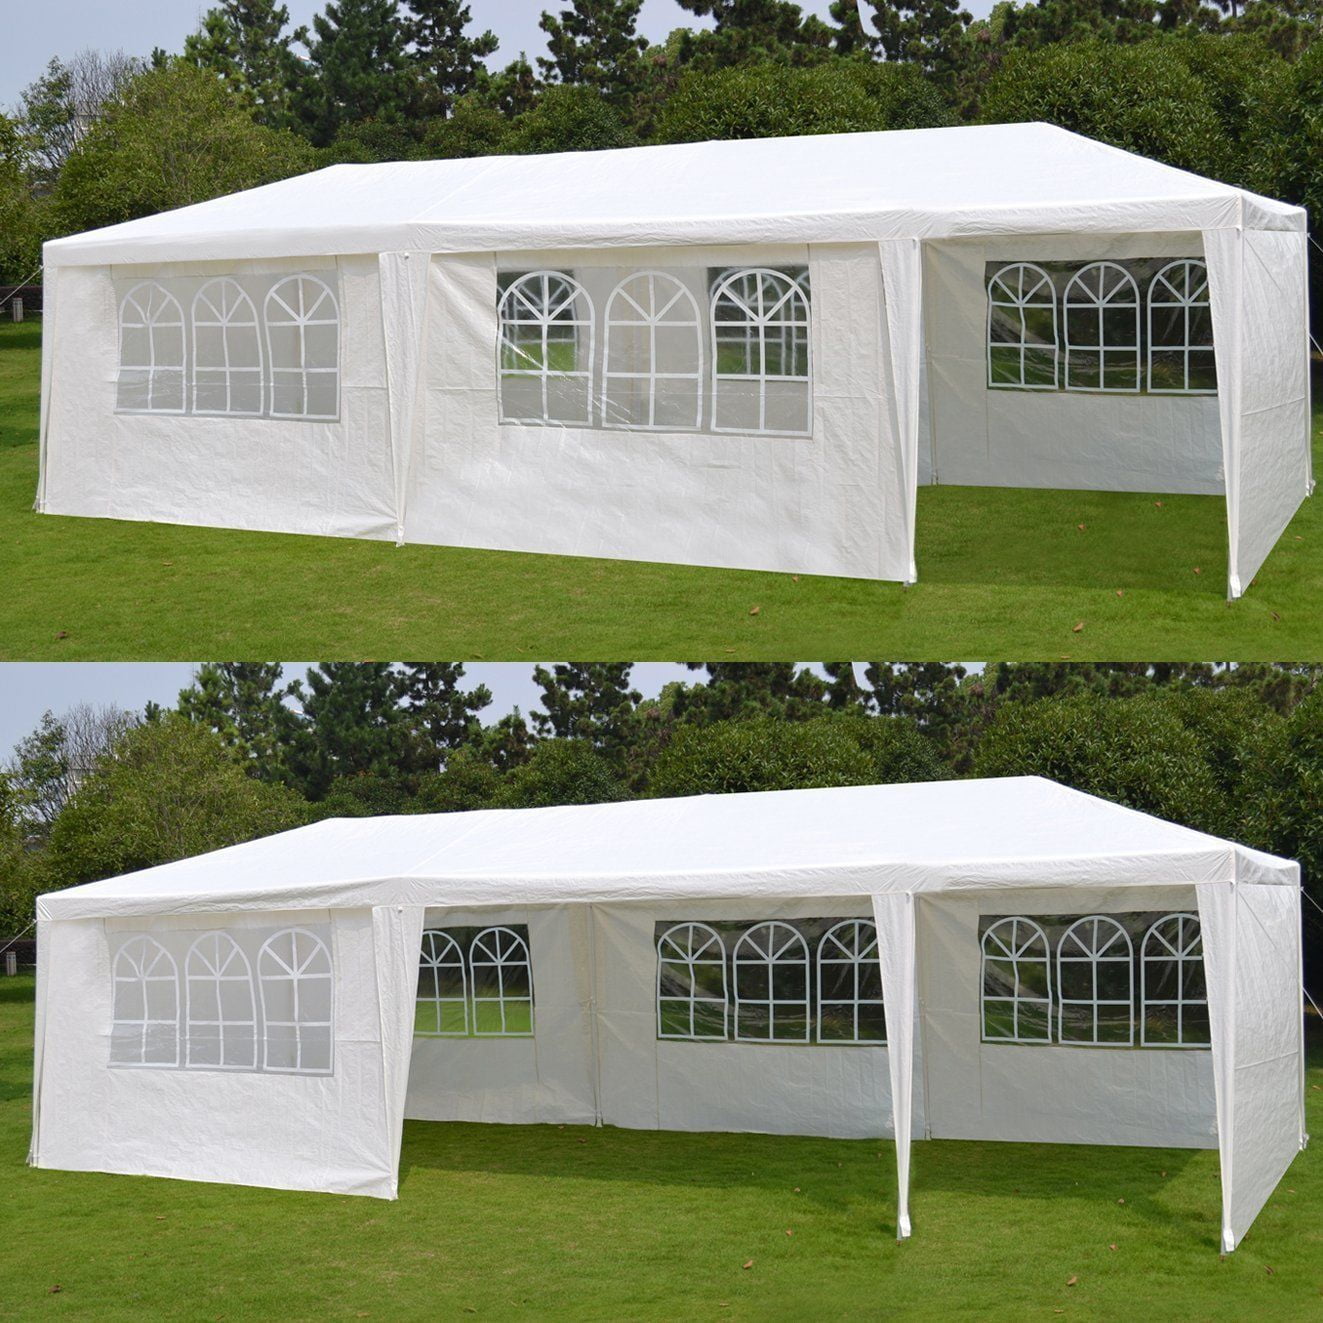 Zeny 10'x 30' White Gazebo Wedding Party Tent Canopy With ...